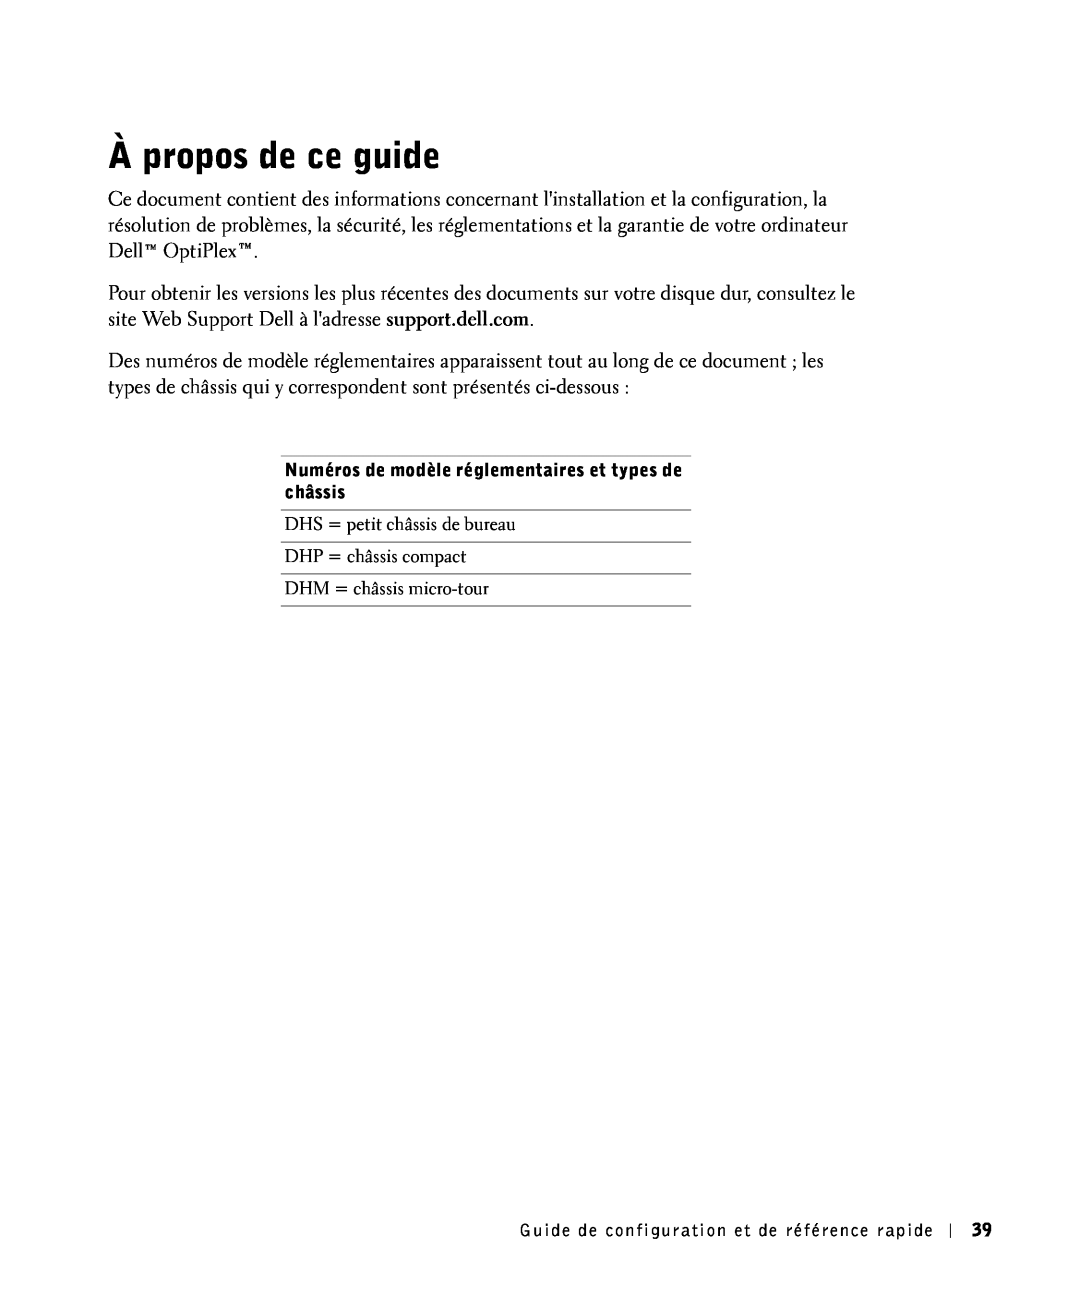 Dell 81FTK manual À propos de ce guide, Numéros de modèle réglementaires et types de châssis, DHM = châssis micro-tour 